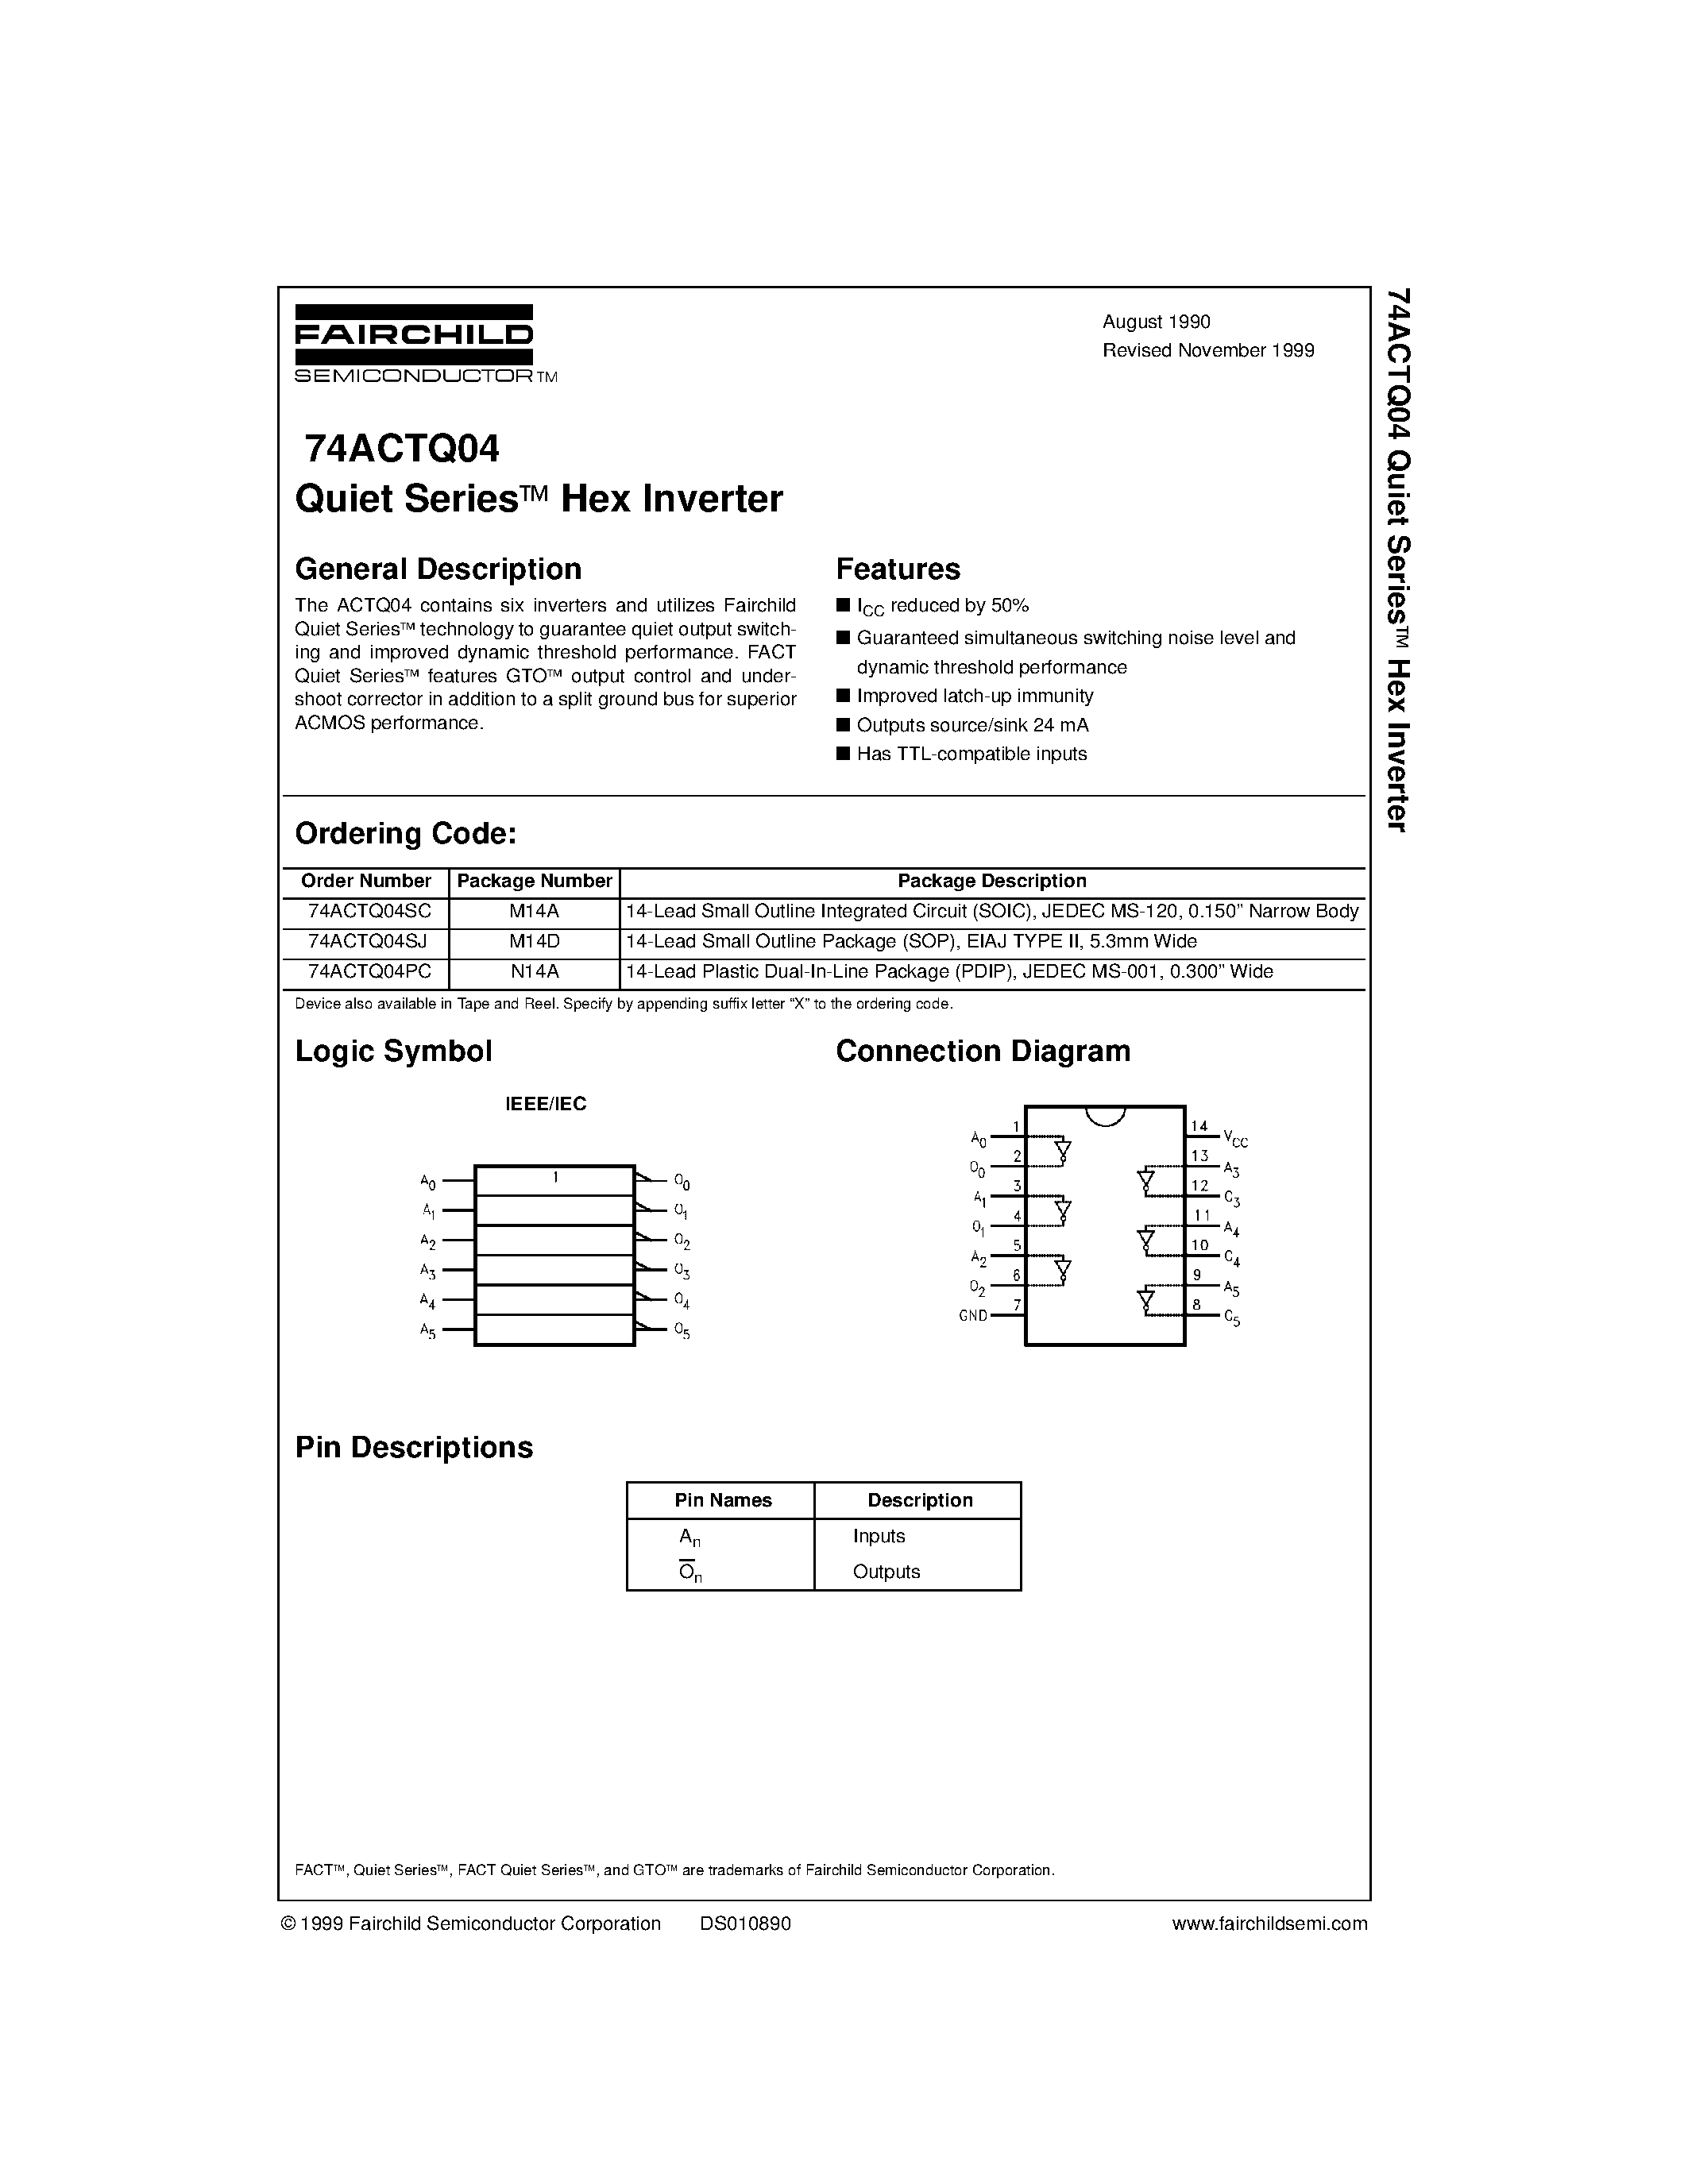 Datasheet 74ACTQ04PC - Quiet Series Hex Inverter page 1